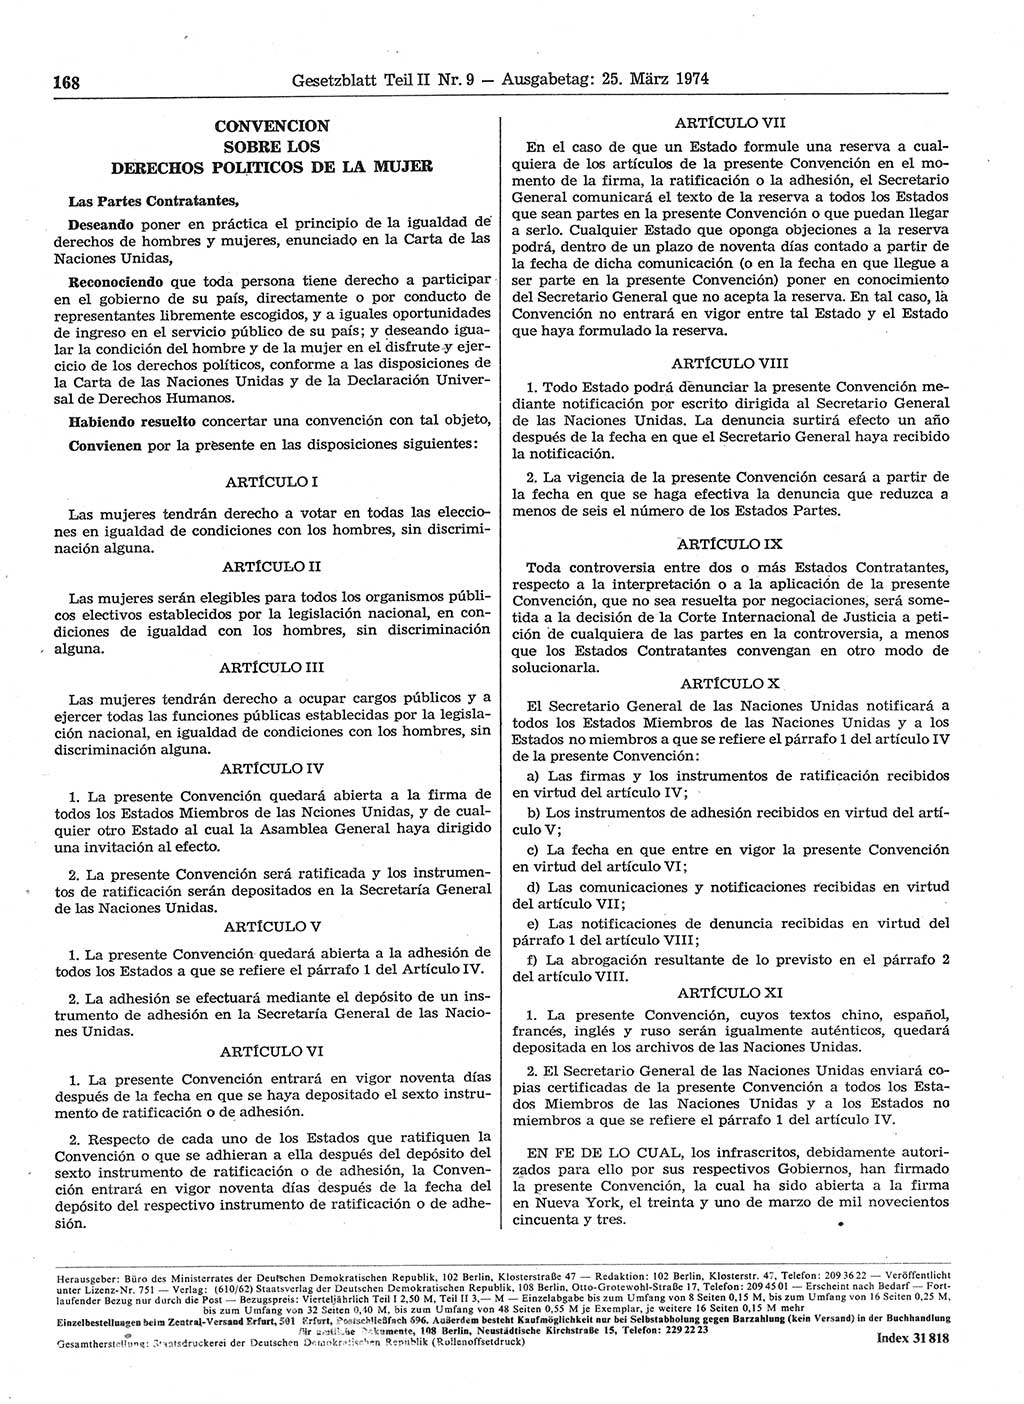 Gesetzblatt (GBl.) der Deutschen Demokratischen Republik (DDR) Teil ⅠⅠ 1974, Seite 168 (GBl. DDR ⅠⅠ 1974, S. 168)